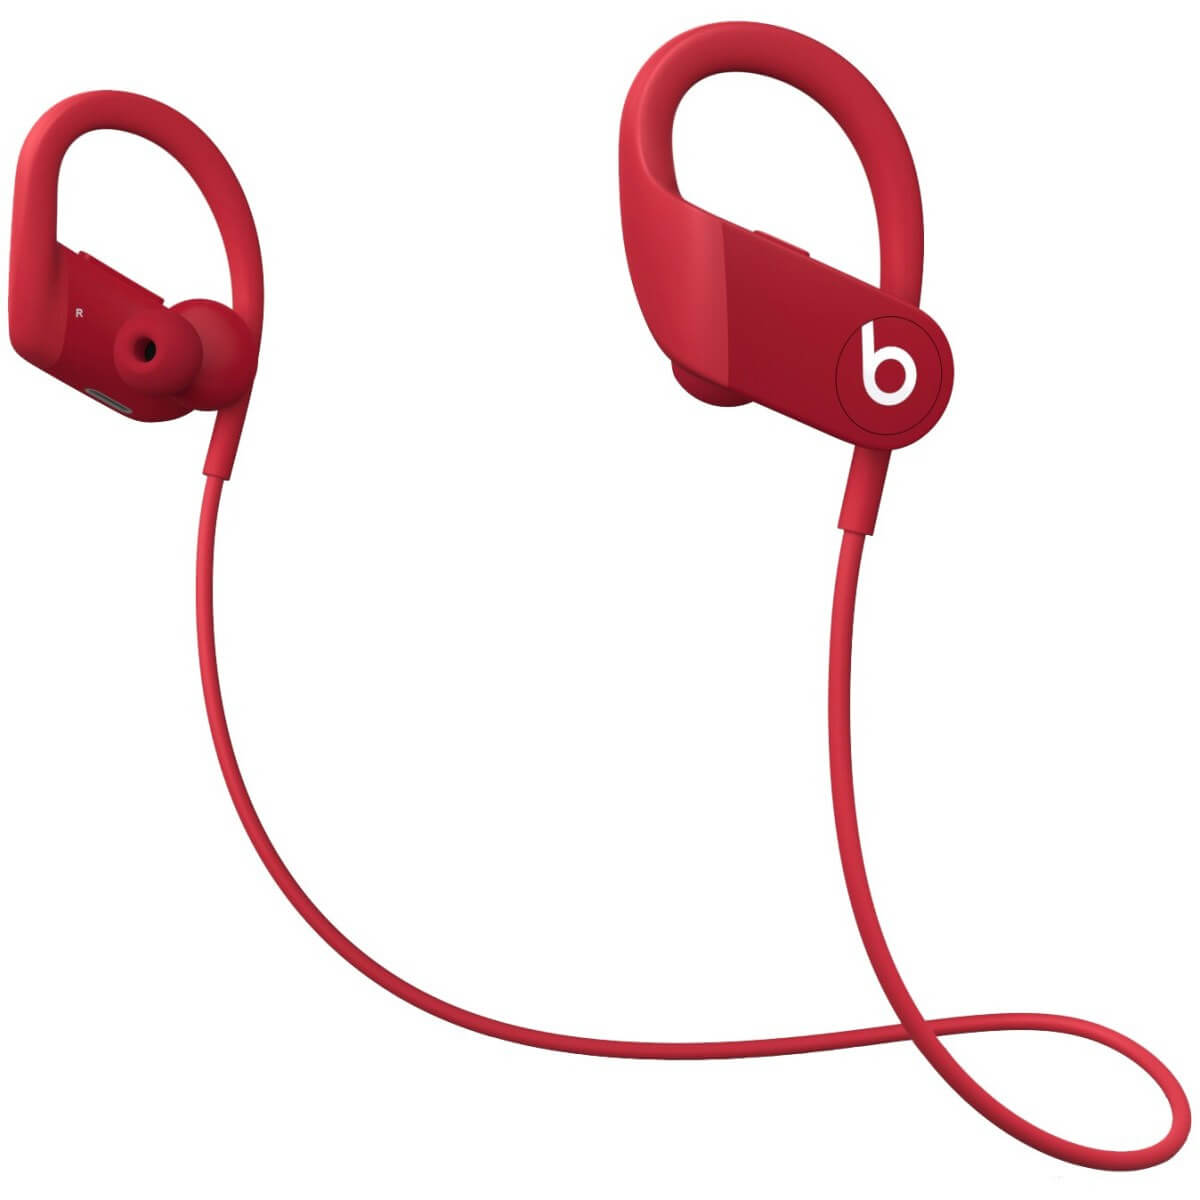 nowe słuchawki bezprzewodowe Apple PowerBeats 4 jak AirPods plotki przecieki wycieki kiedy premiera